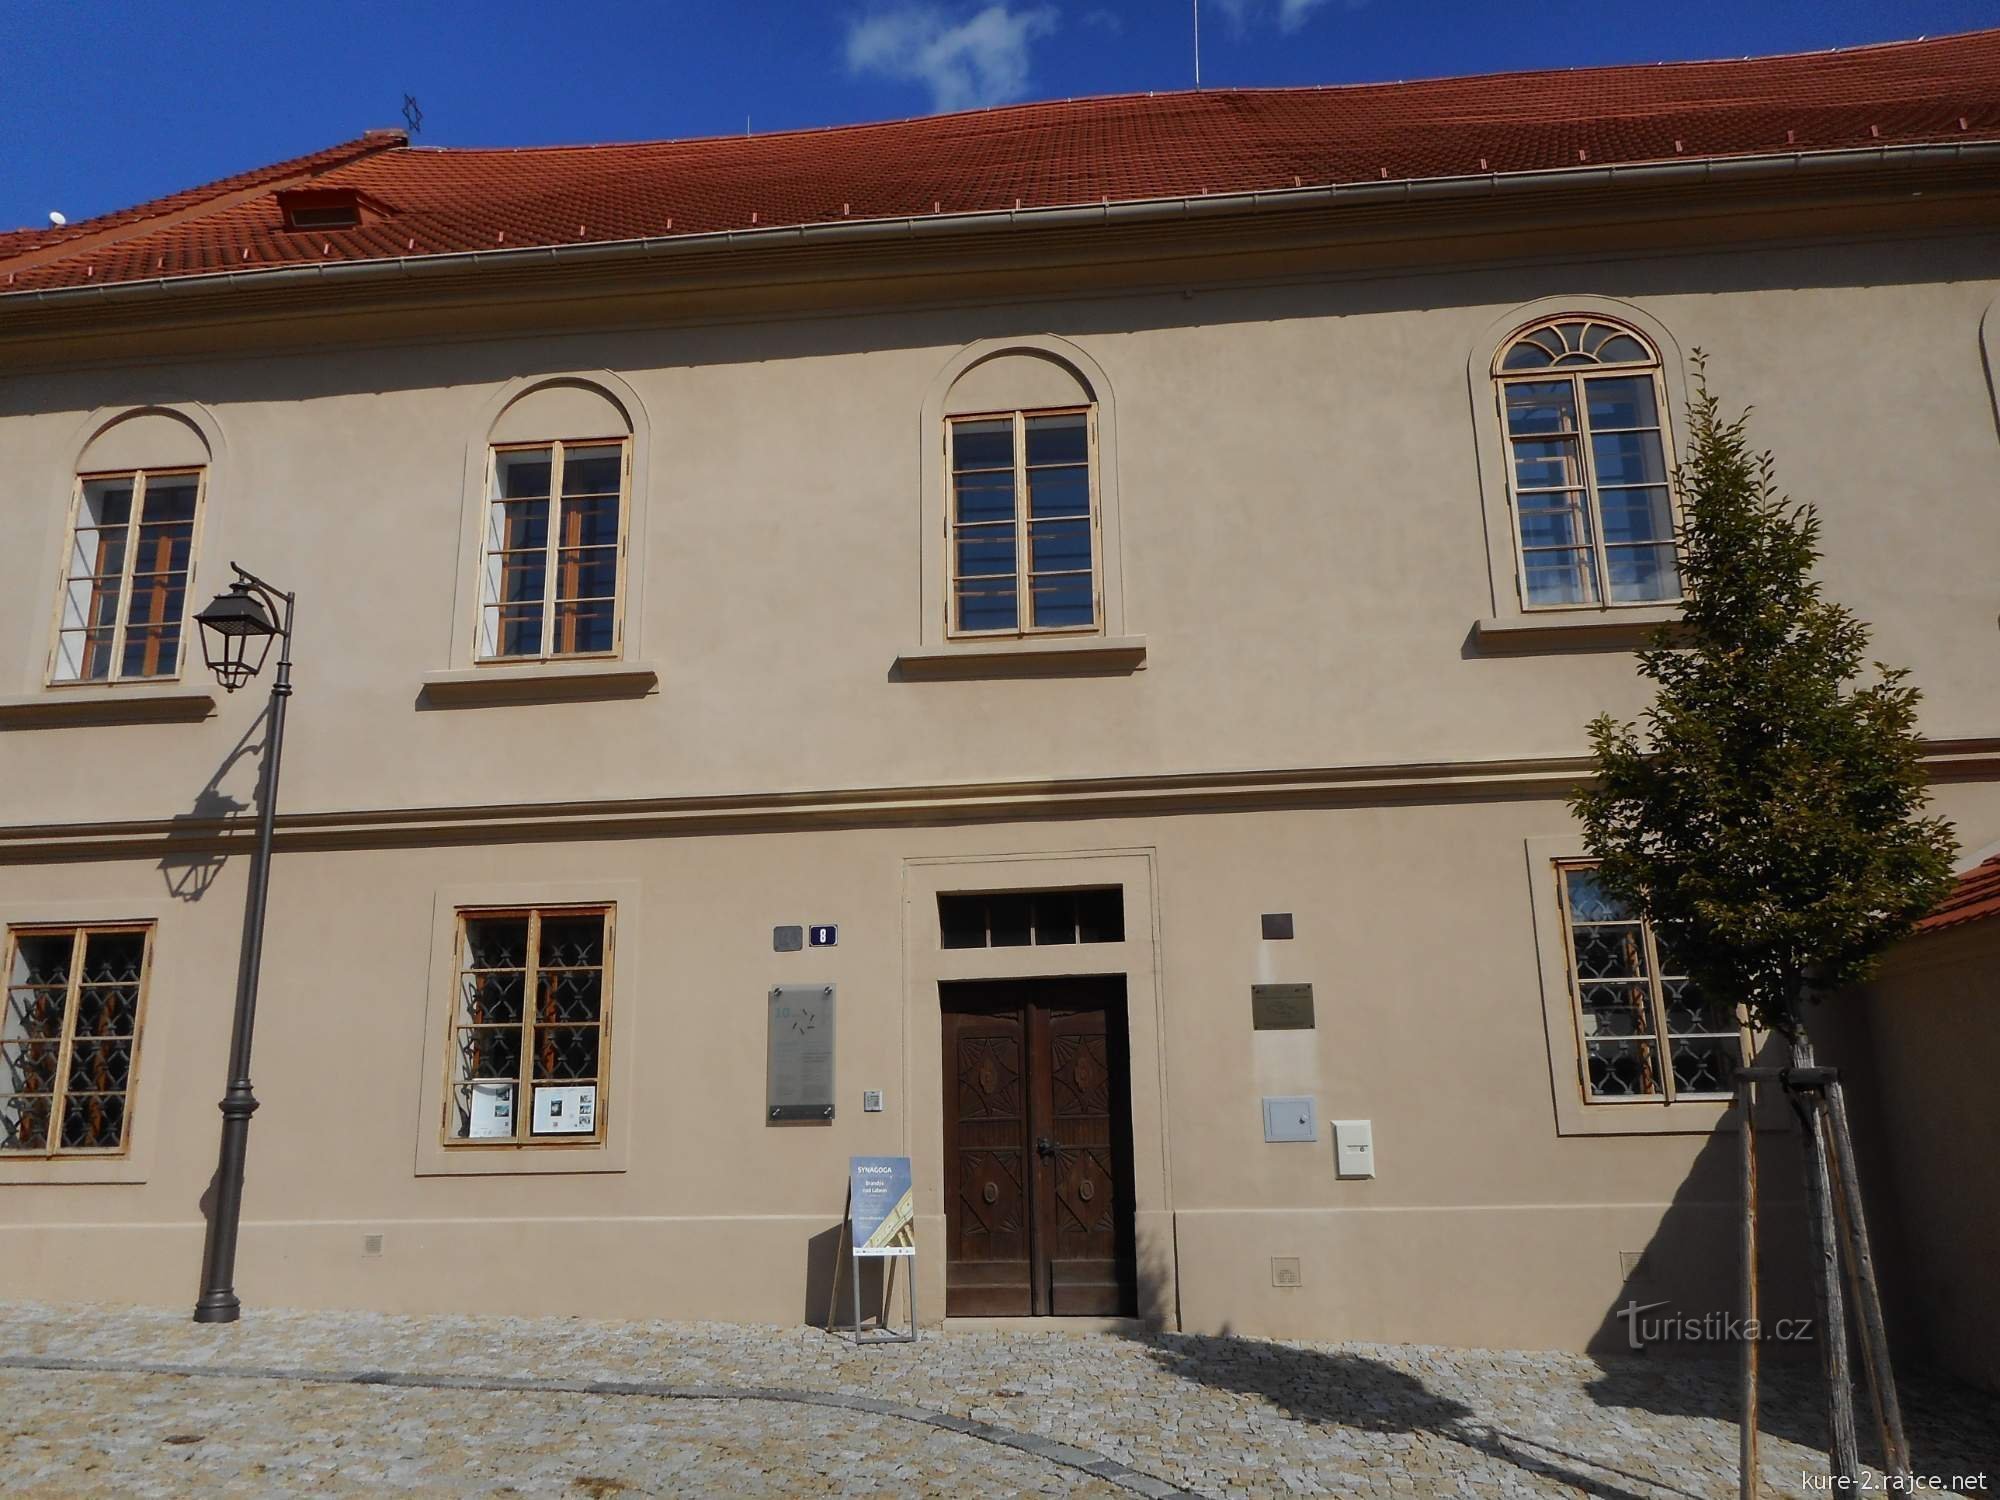 Hoy, la sinagoga sirve como museo judío.